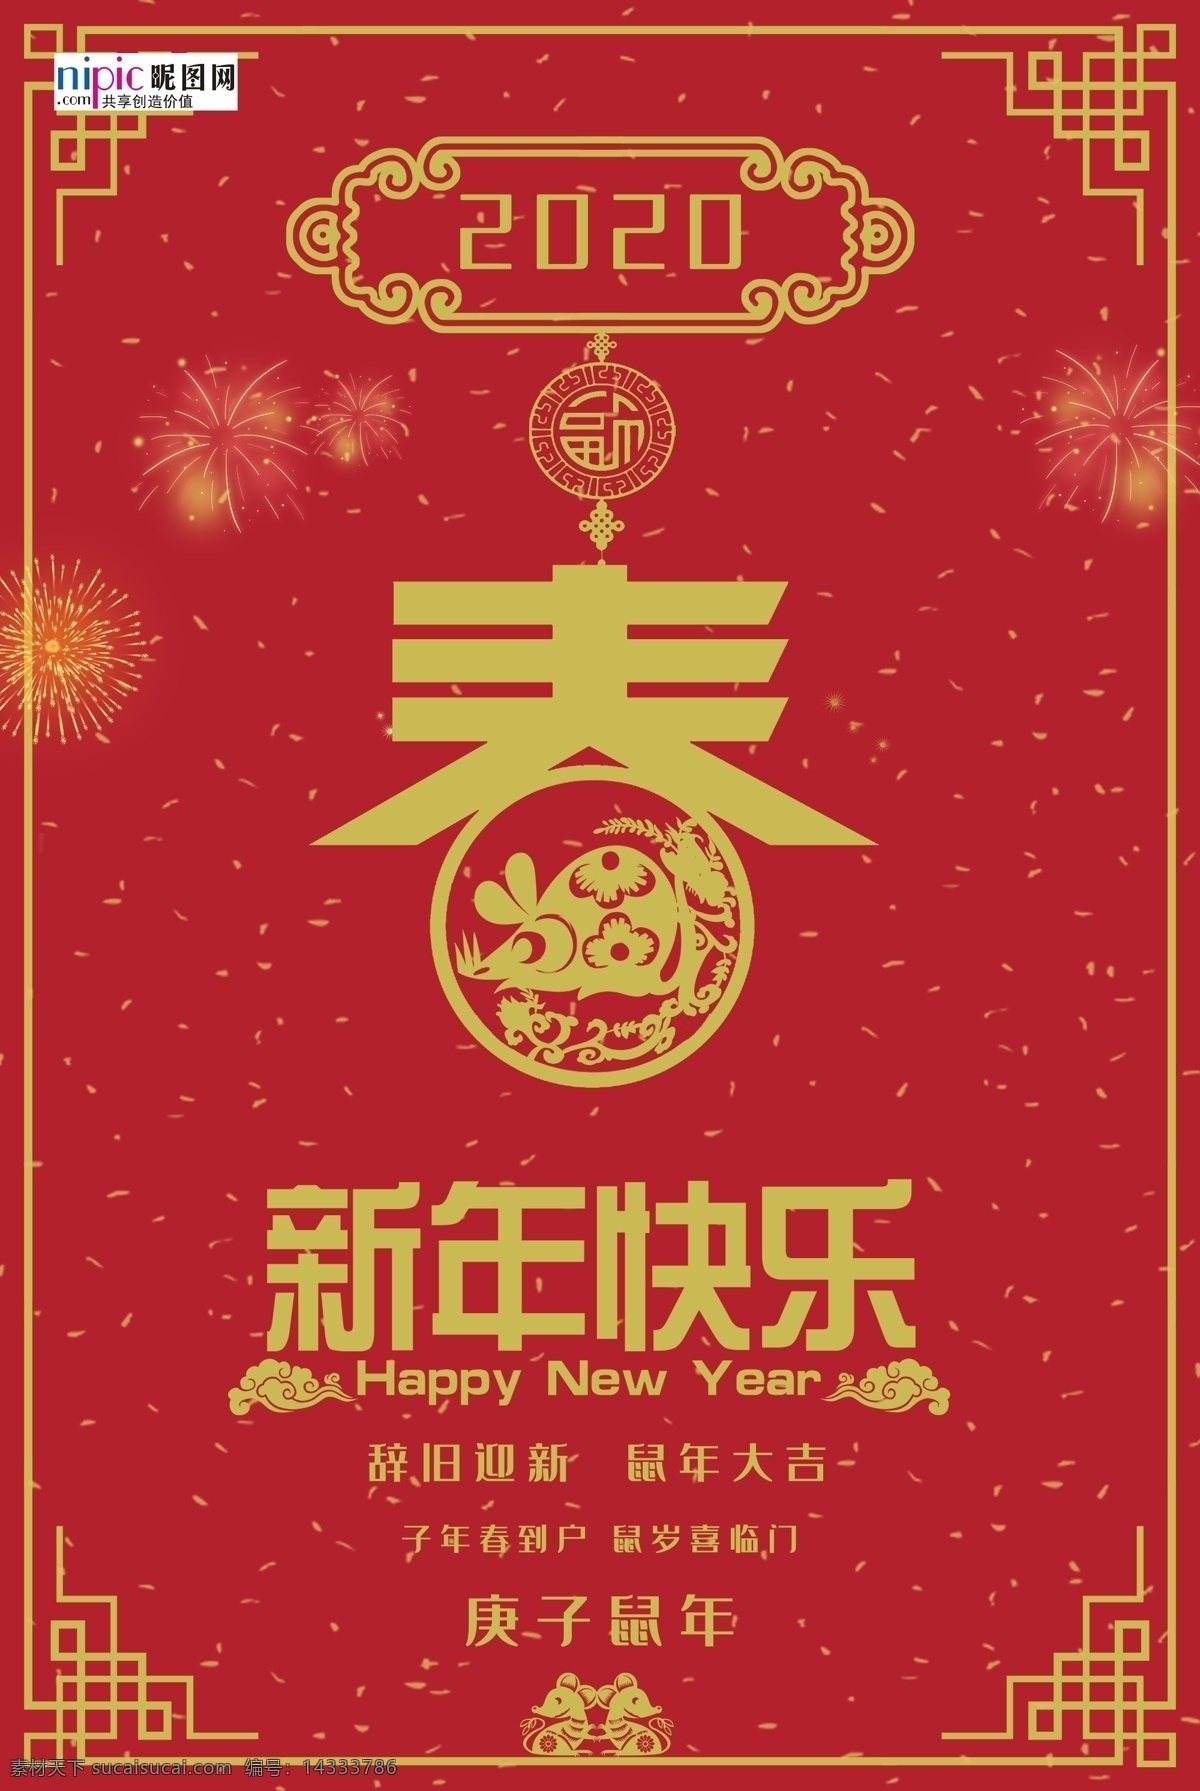 鼠年红色海报 鼠年 红色 中国风 2020 海报 节日海报 单页